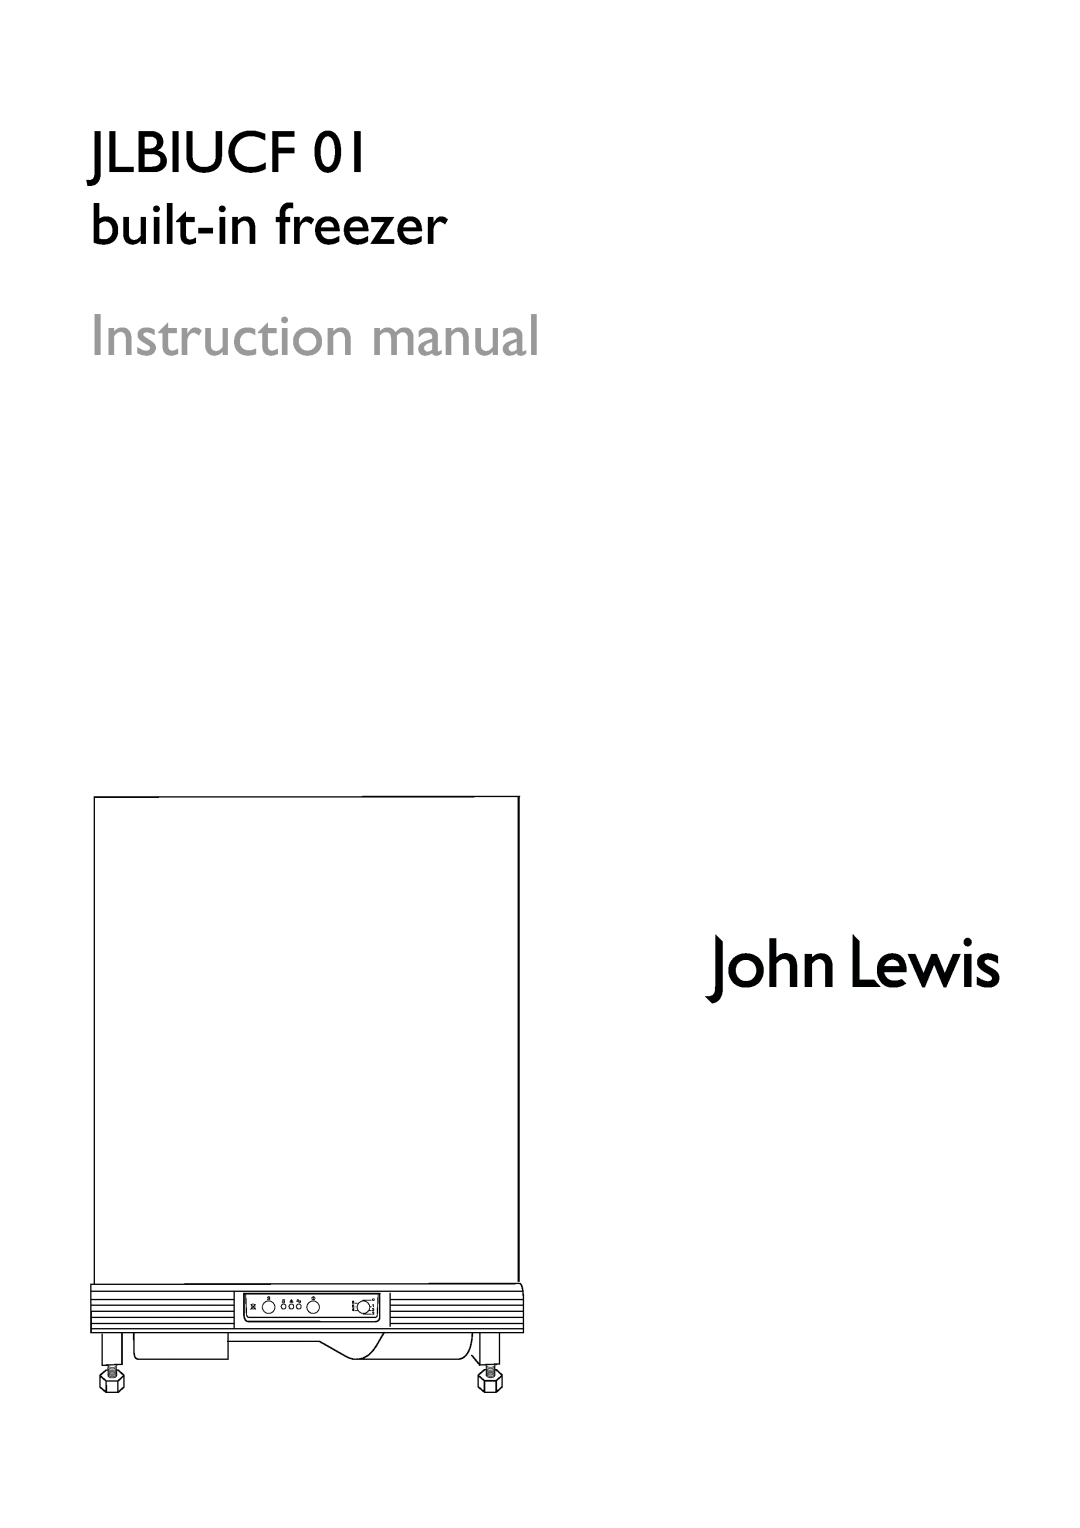 John Lewis instruction manual JLBIUCF 01 built-infreezer 